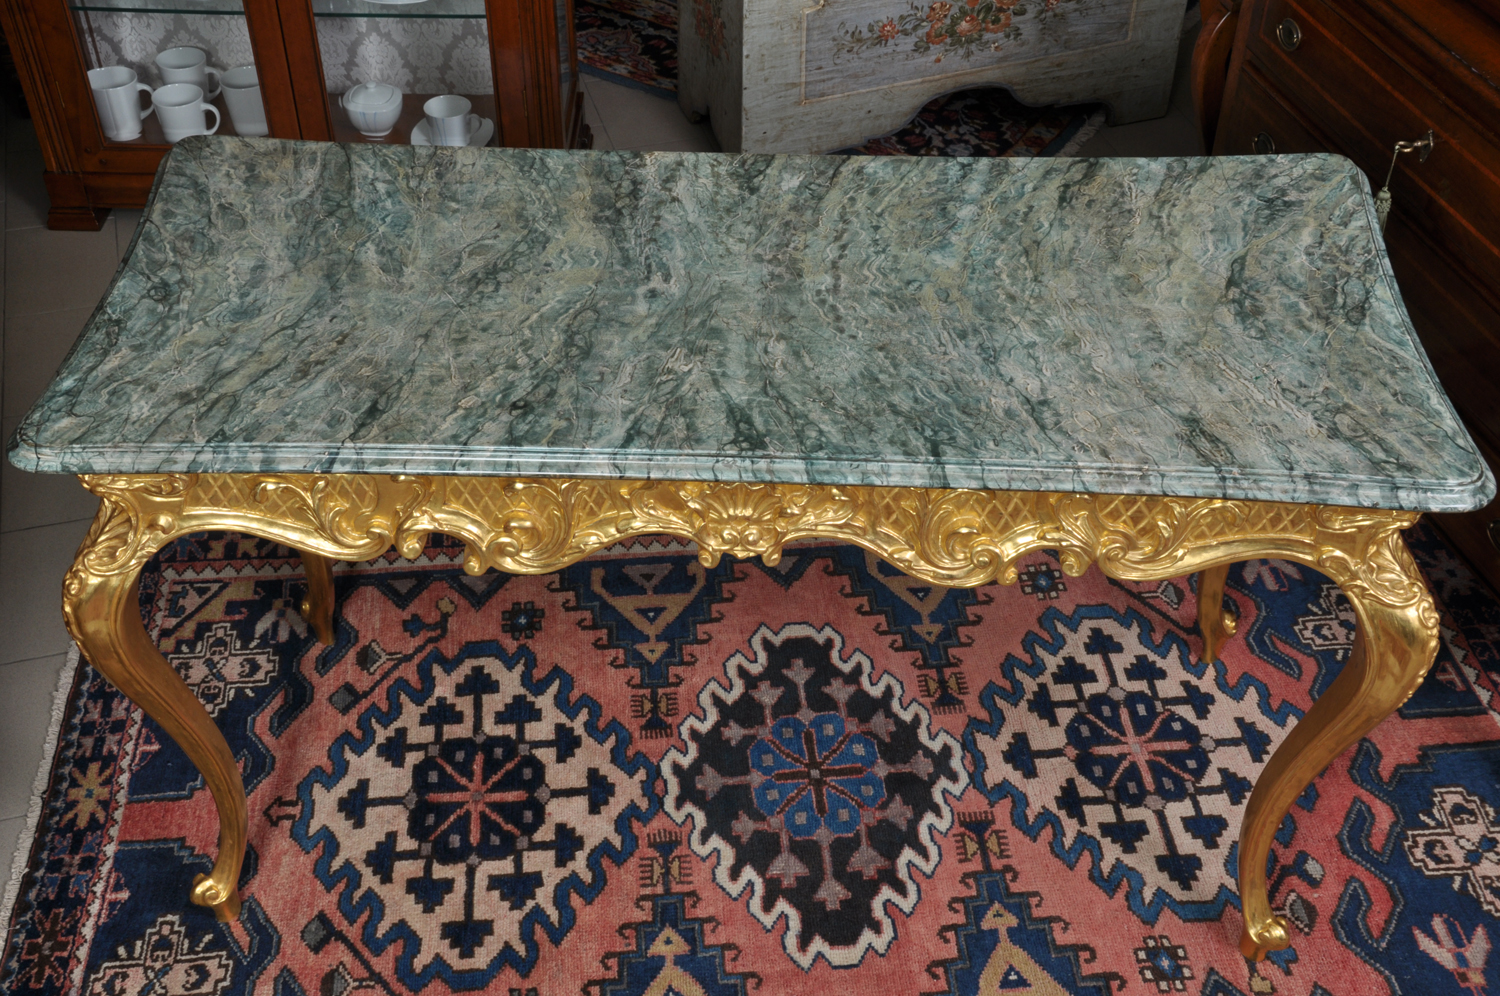 tavolo scrittoio prodotto dal brand di lusso Vangelista mobili 1960 in stile settecento veneziano, piano laccato in marmo verde alpi, fusto intagliato a mano in oro zecchino consumato, manufatto costruito su misura